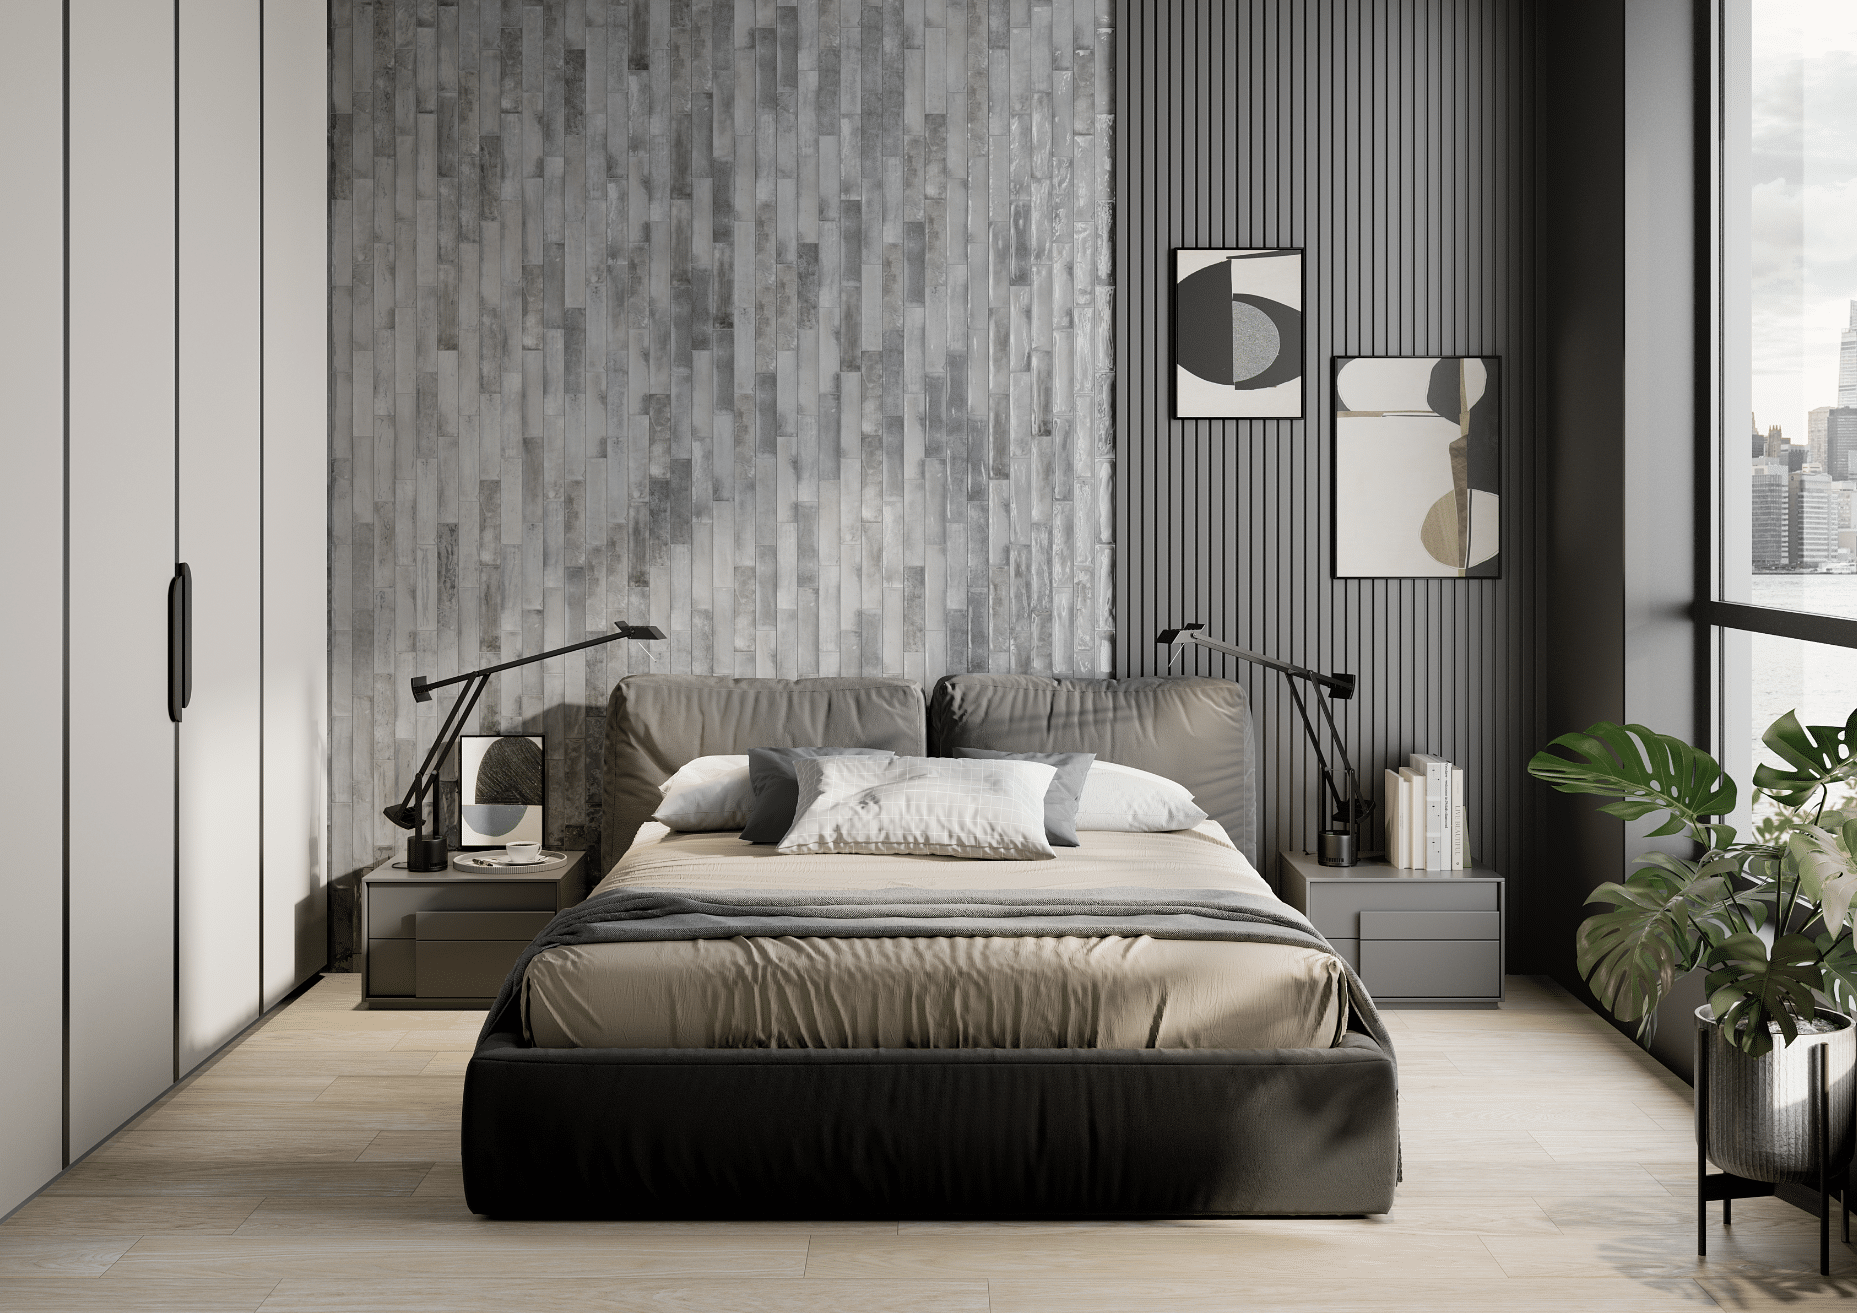 Fliesendorf zeigt ein Schlafzimmer mit dekorativen Wandfliesen in grau, einem Doppelbett und Holzboden mit Aussicht auf die Hochhäuser der Stadt.